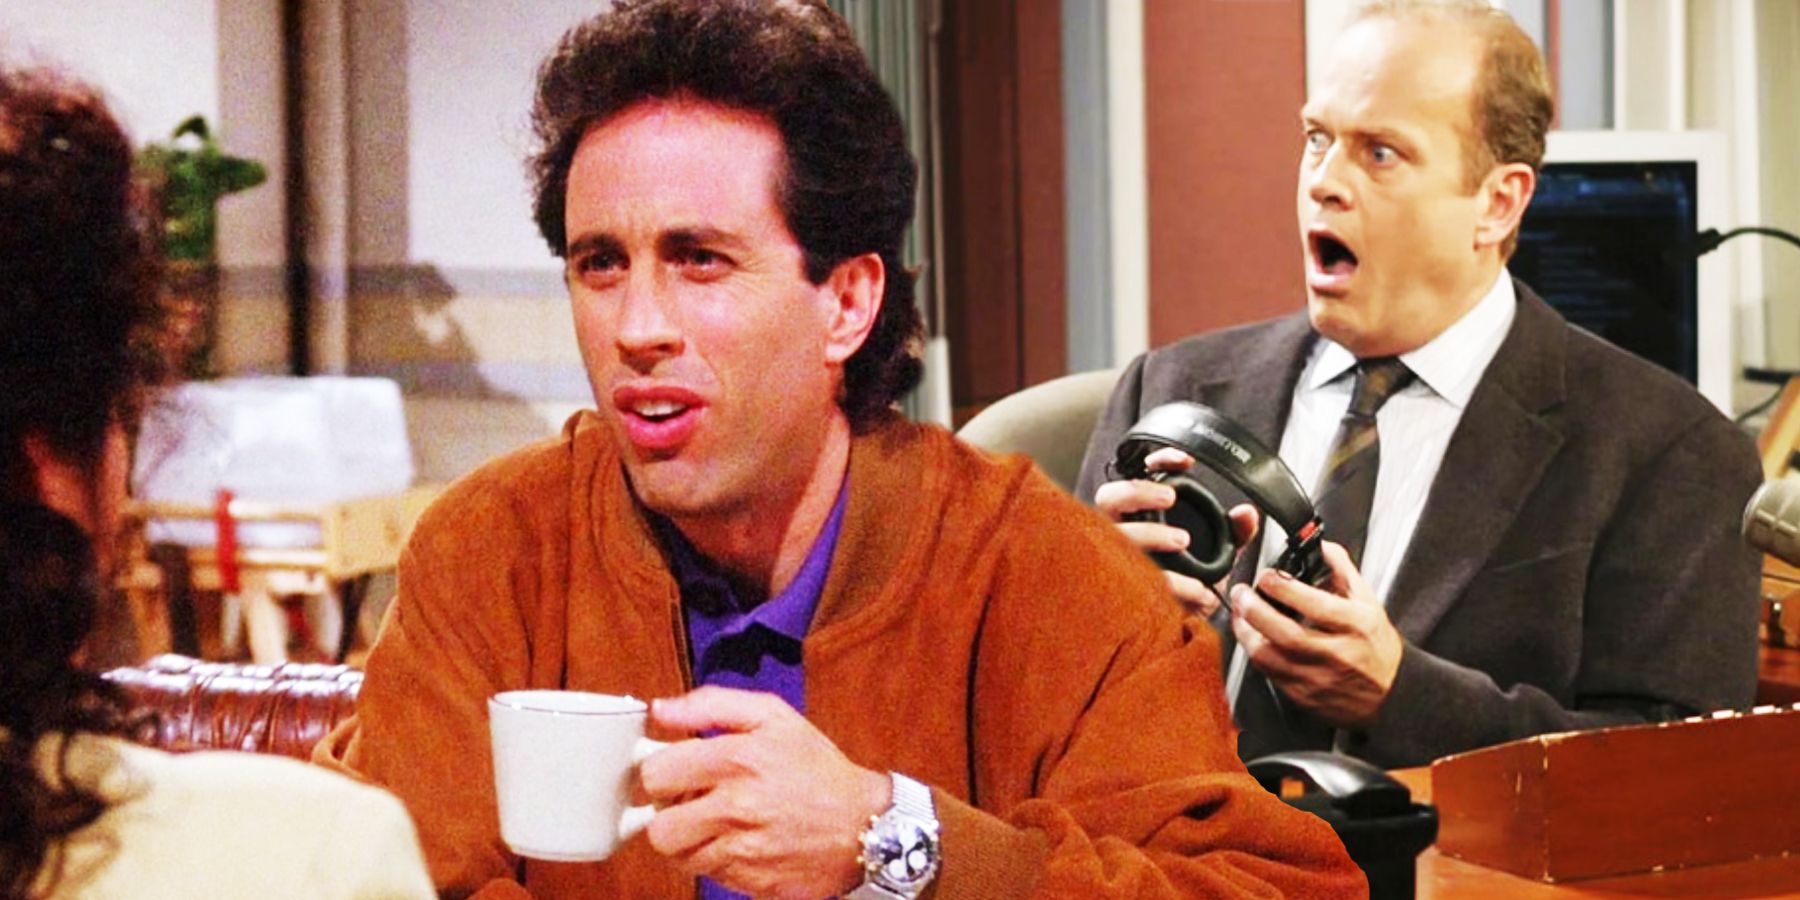 Jerry Seinfeld in Seinfeld and Kelsey Grammer in Frasier